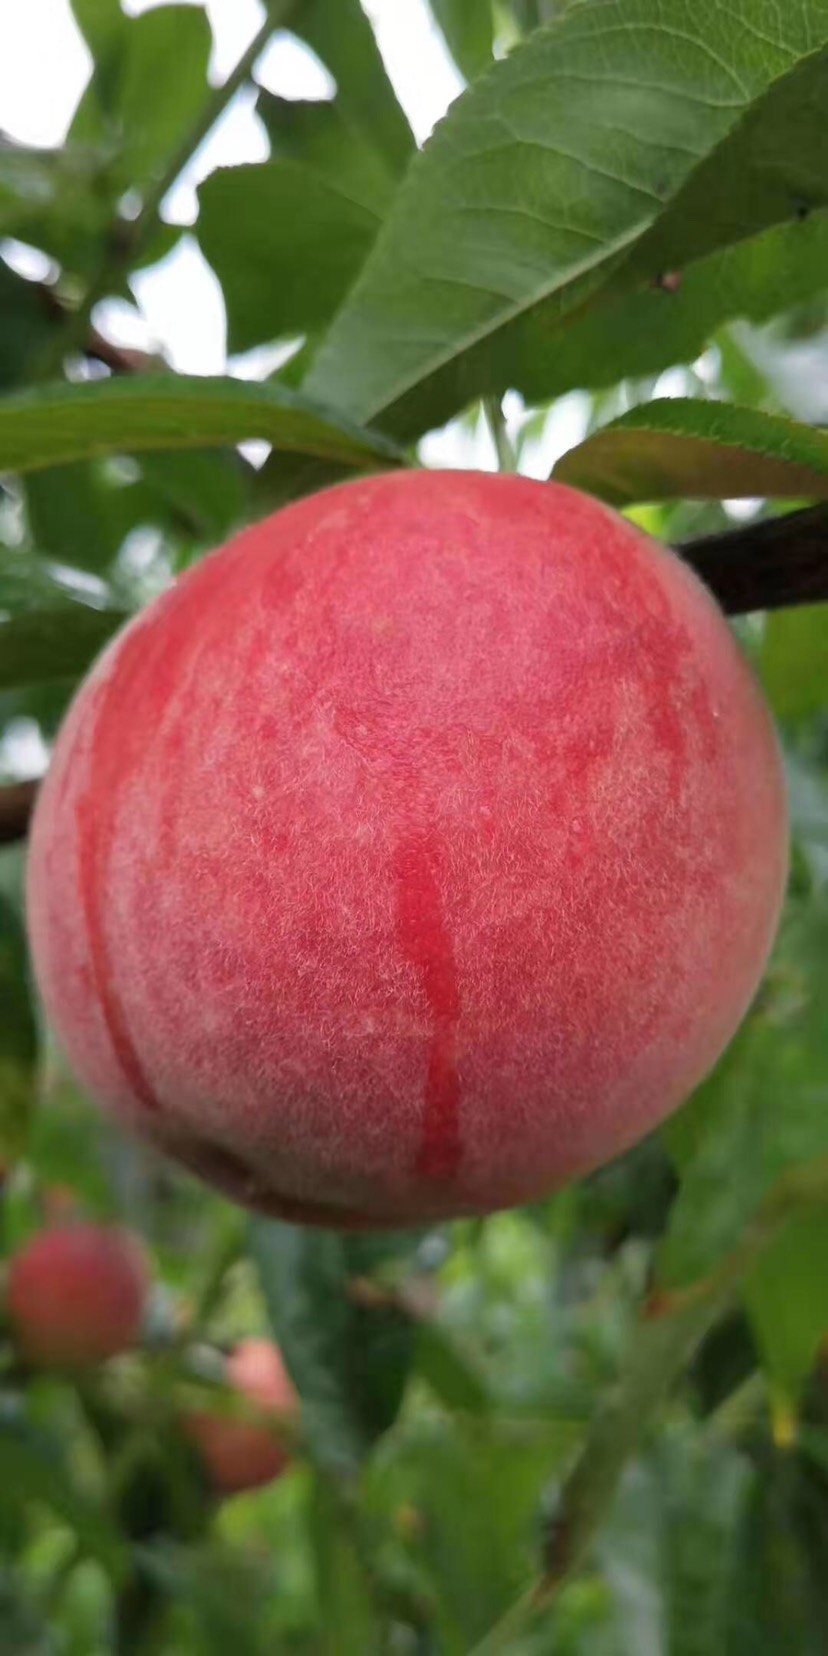 是罕见的特早熟桃品种,比"沪005"桃早熟3天,比"春丽"桃早熟15天,比"